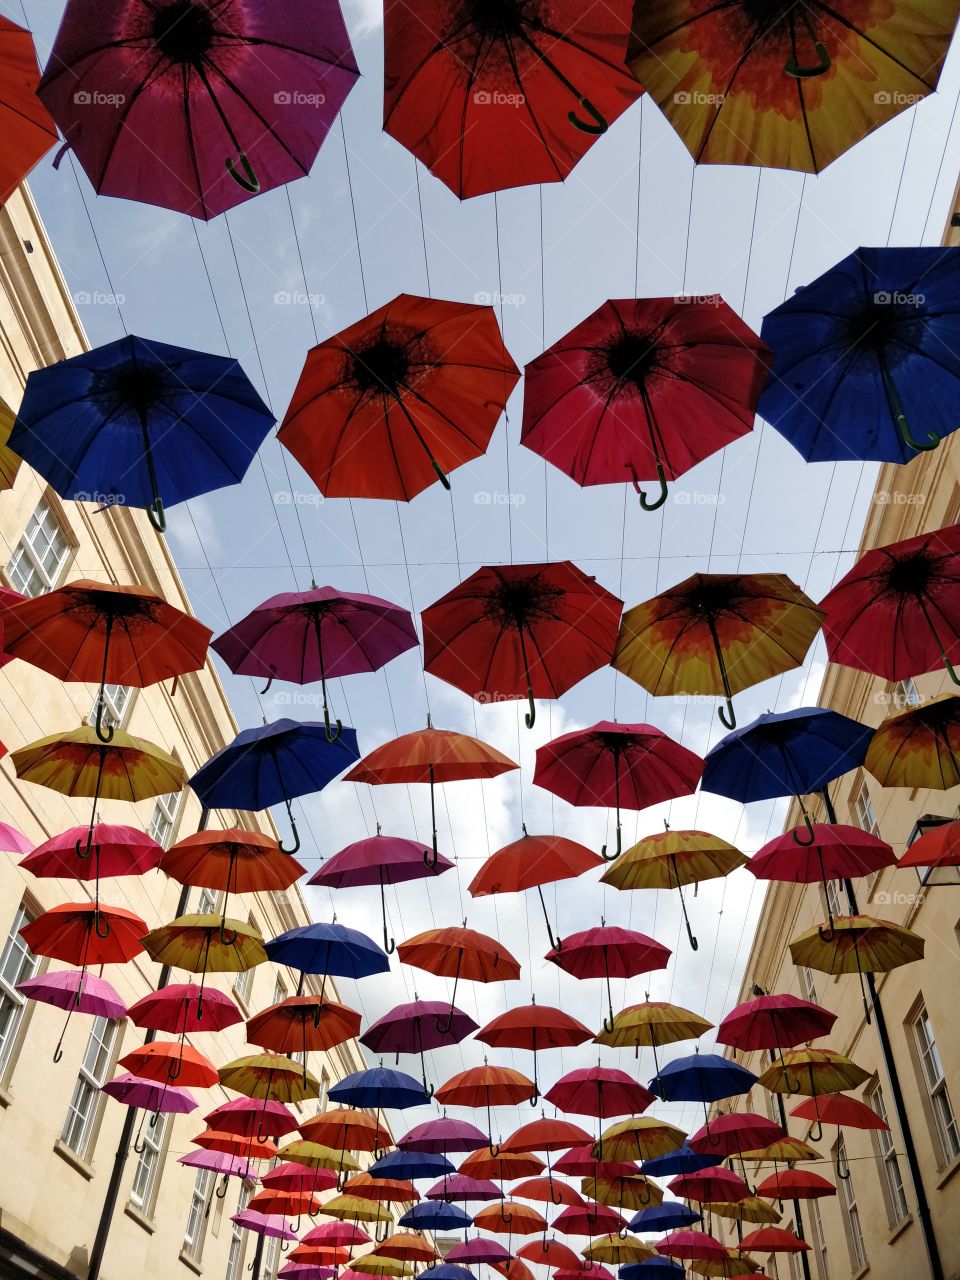 Umbrella street art in Bath, UK